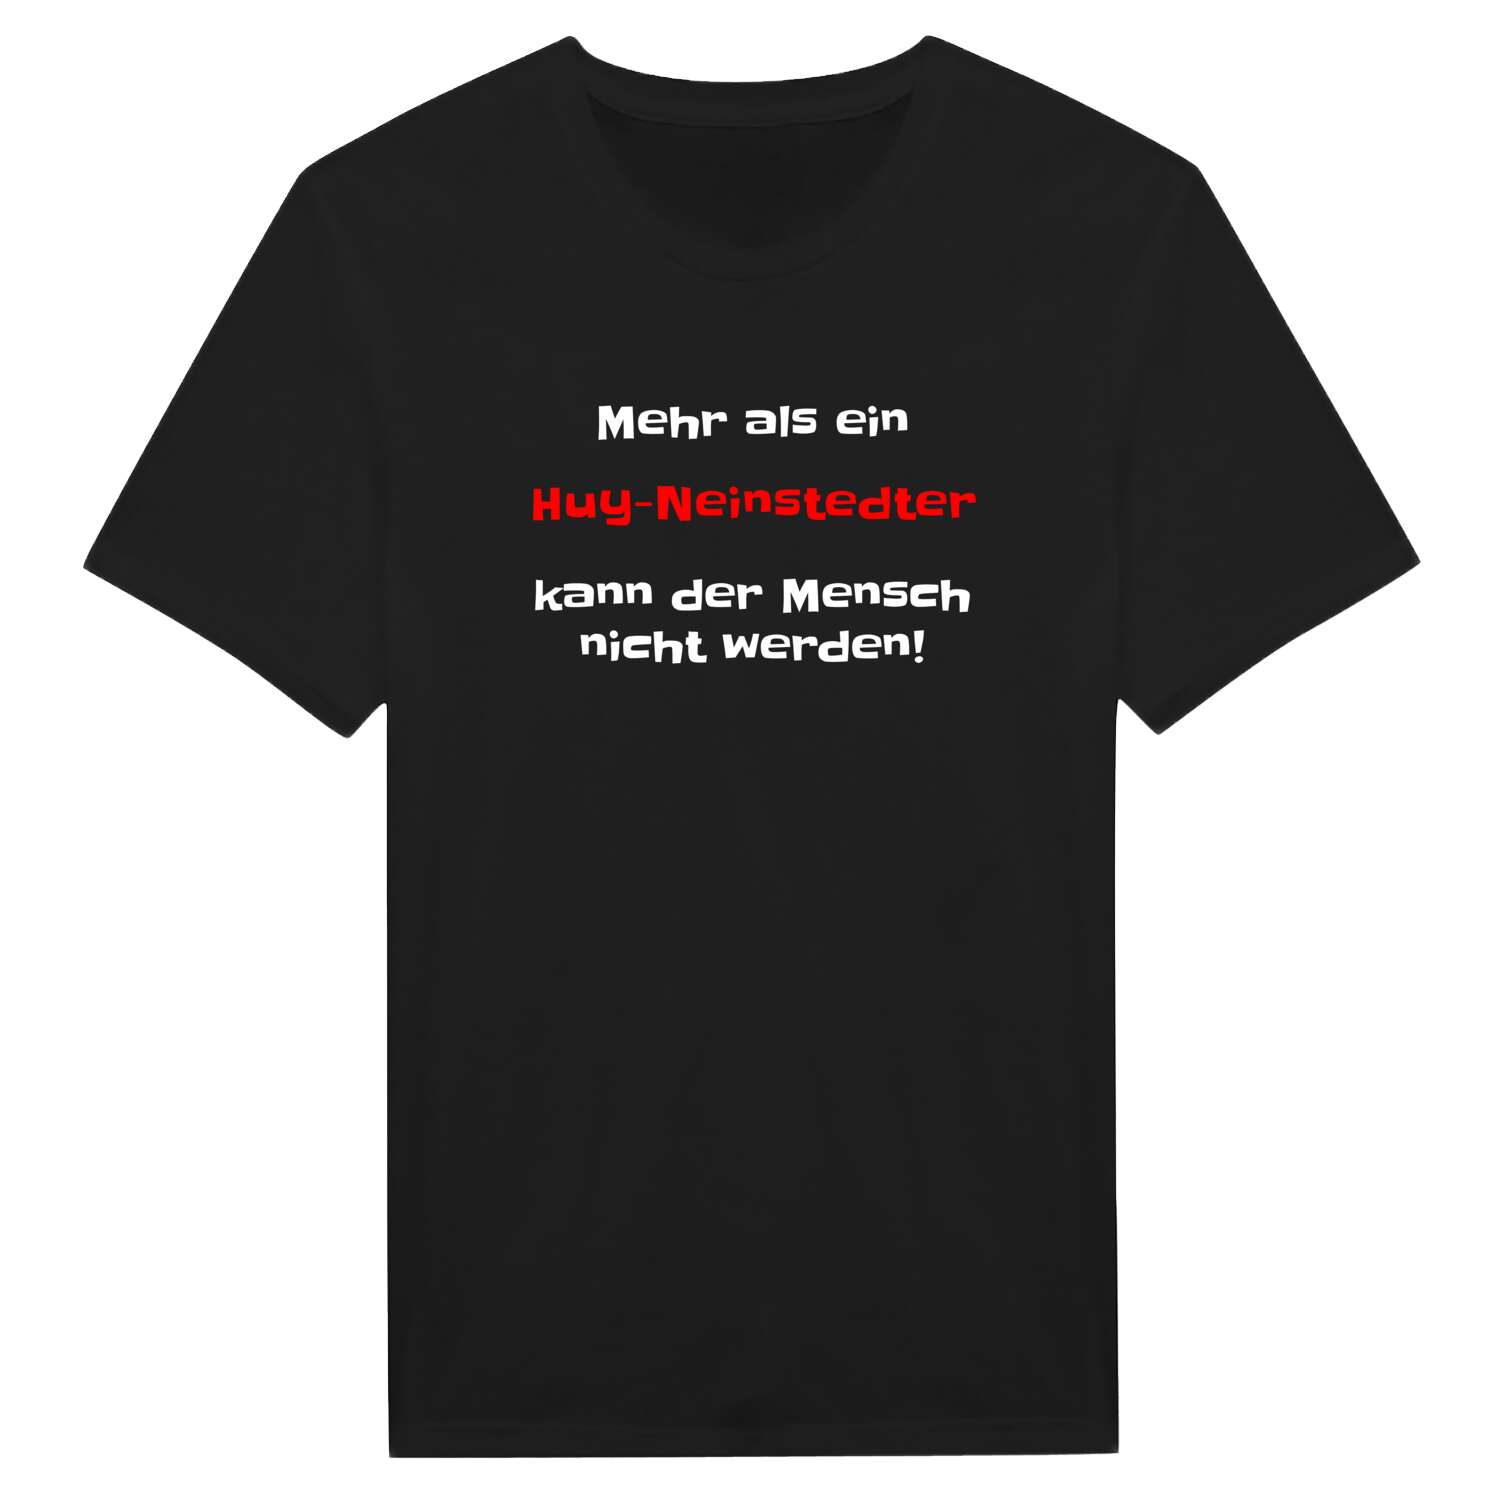 Huy-Neinstedt T-Shirt »Mehr als ein«